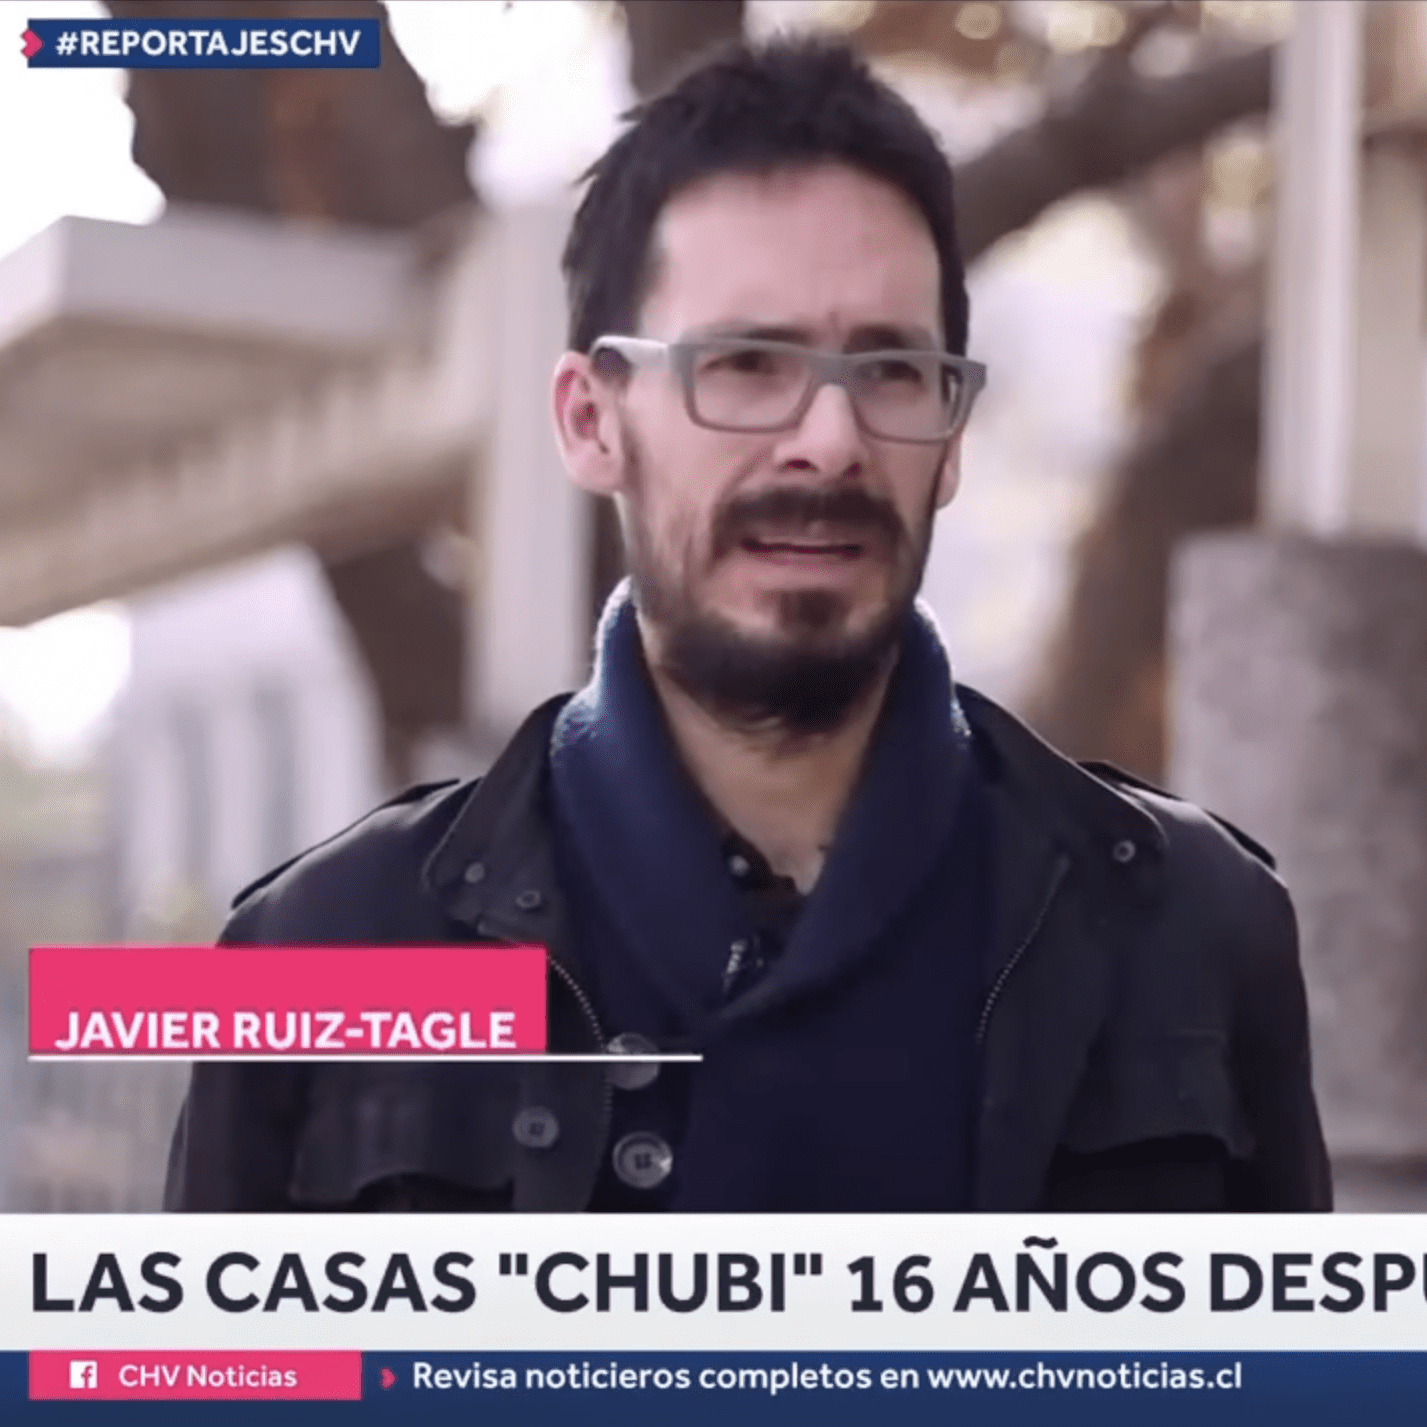 CHV Noticias I Javier Ruiz Tagle sobre “casas chubi”, a 16 años de su entrega en Peñalolén: “El nivel de abandono que sintió esa gente con una vivienda que estaba a años luz de ser digna es lamentable”.